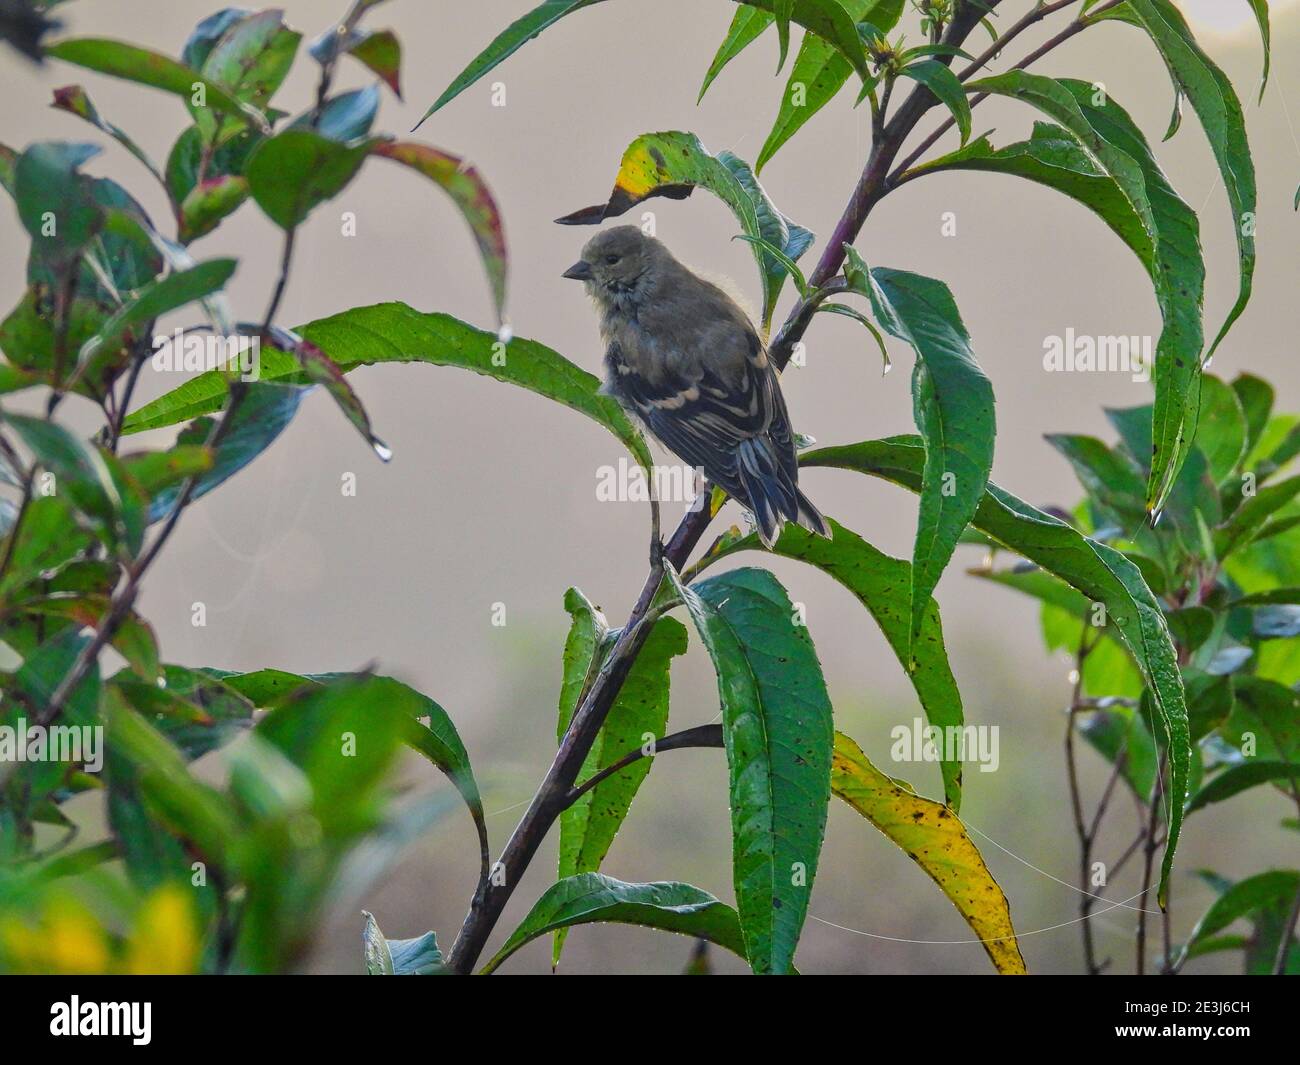 Vogel auf einem Ast: Finch hängt am frühen Morgen an einem grünen Pflanzenstamm mit Wassertröpfchen auf den grünen Blättern und Spinnennetz Seide um Stockfoto